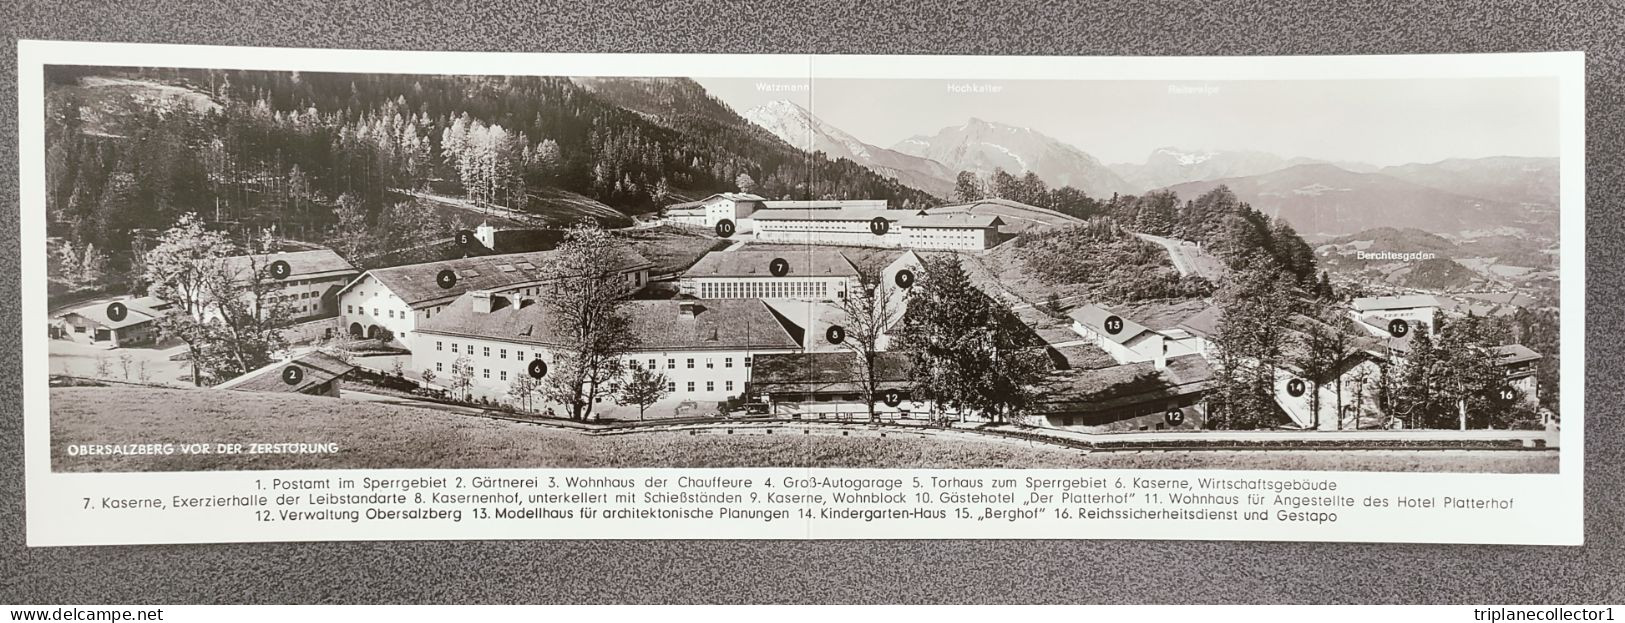 Grote postkaart foto Obersalzberg kazernen Berchtesgaden Adolf Hitler Waffen LSSAH